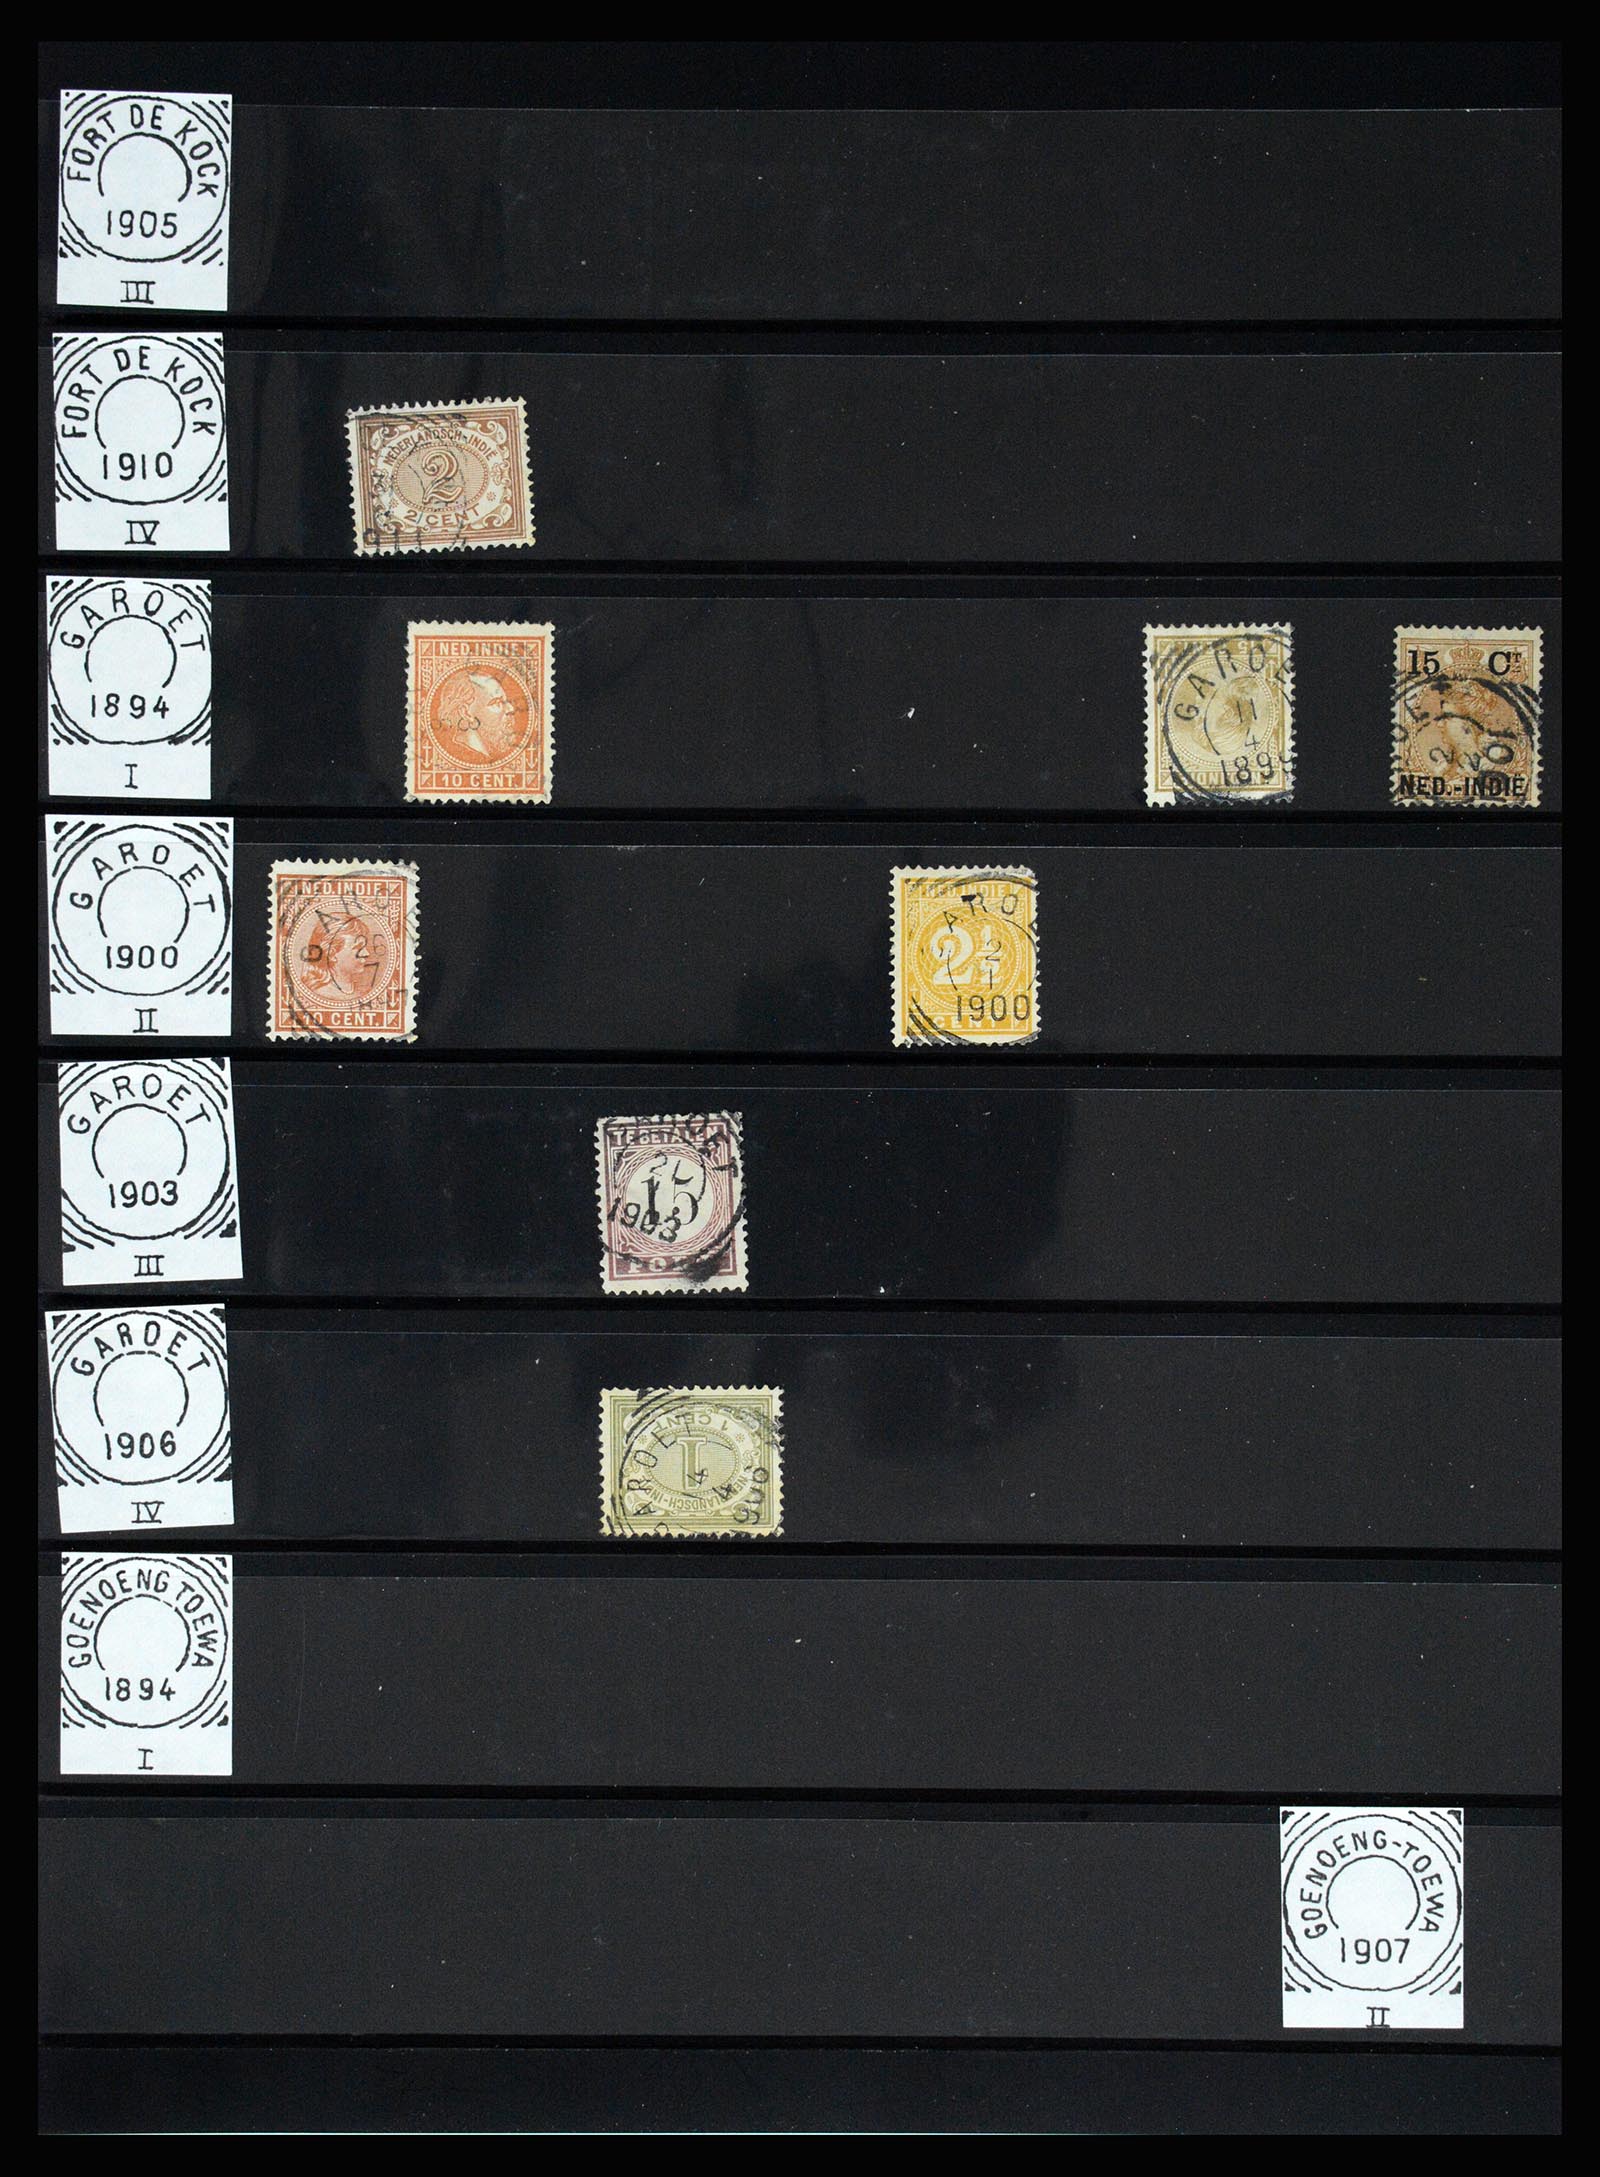 36512 119 - Stamp collection 36512 Nederlands Indië stempels 1872-1930.